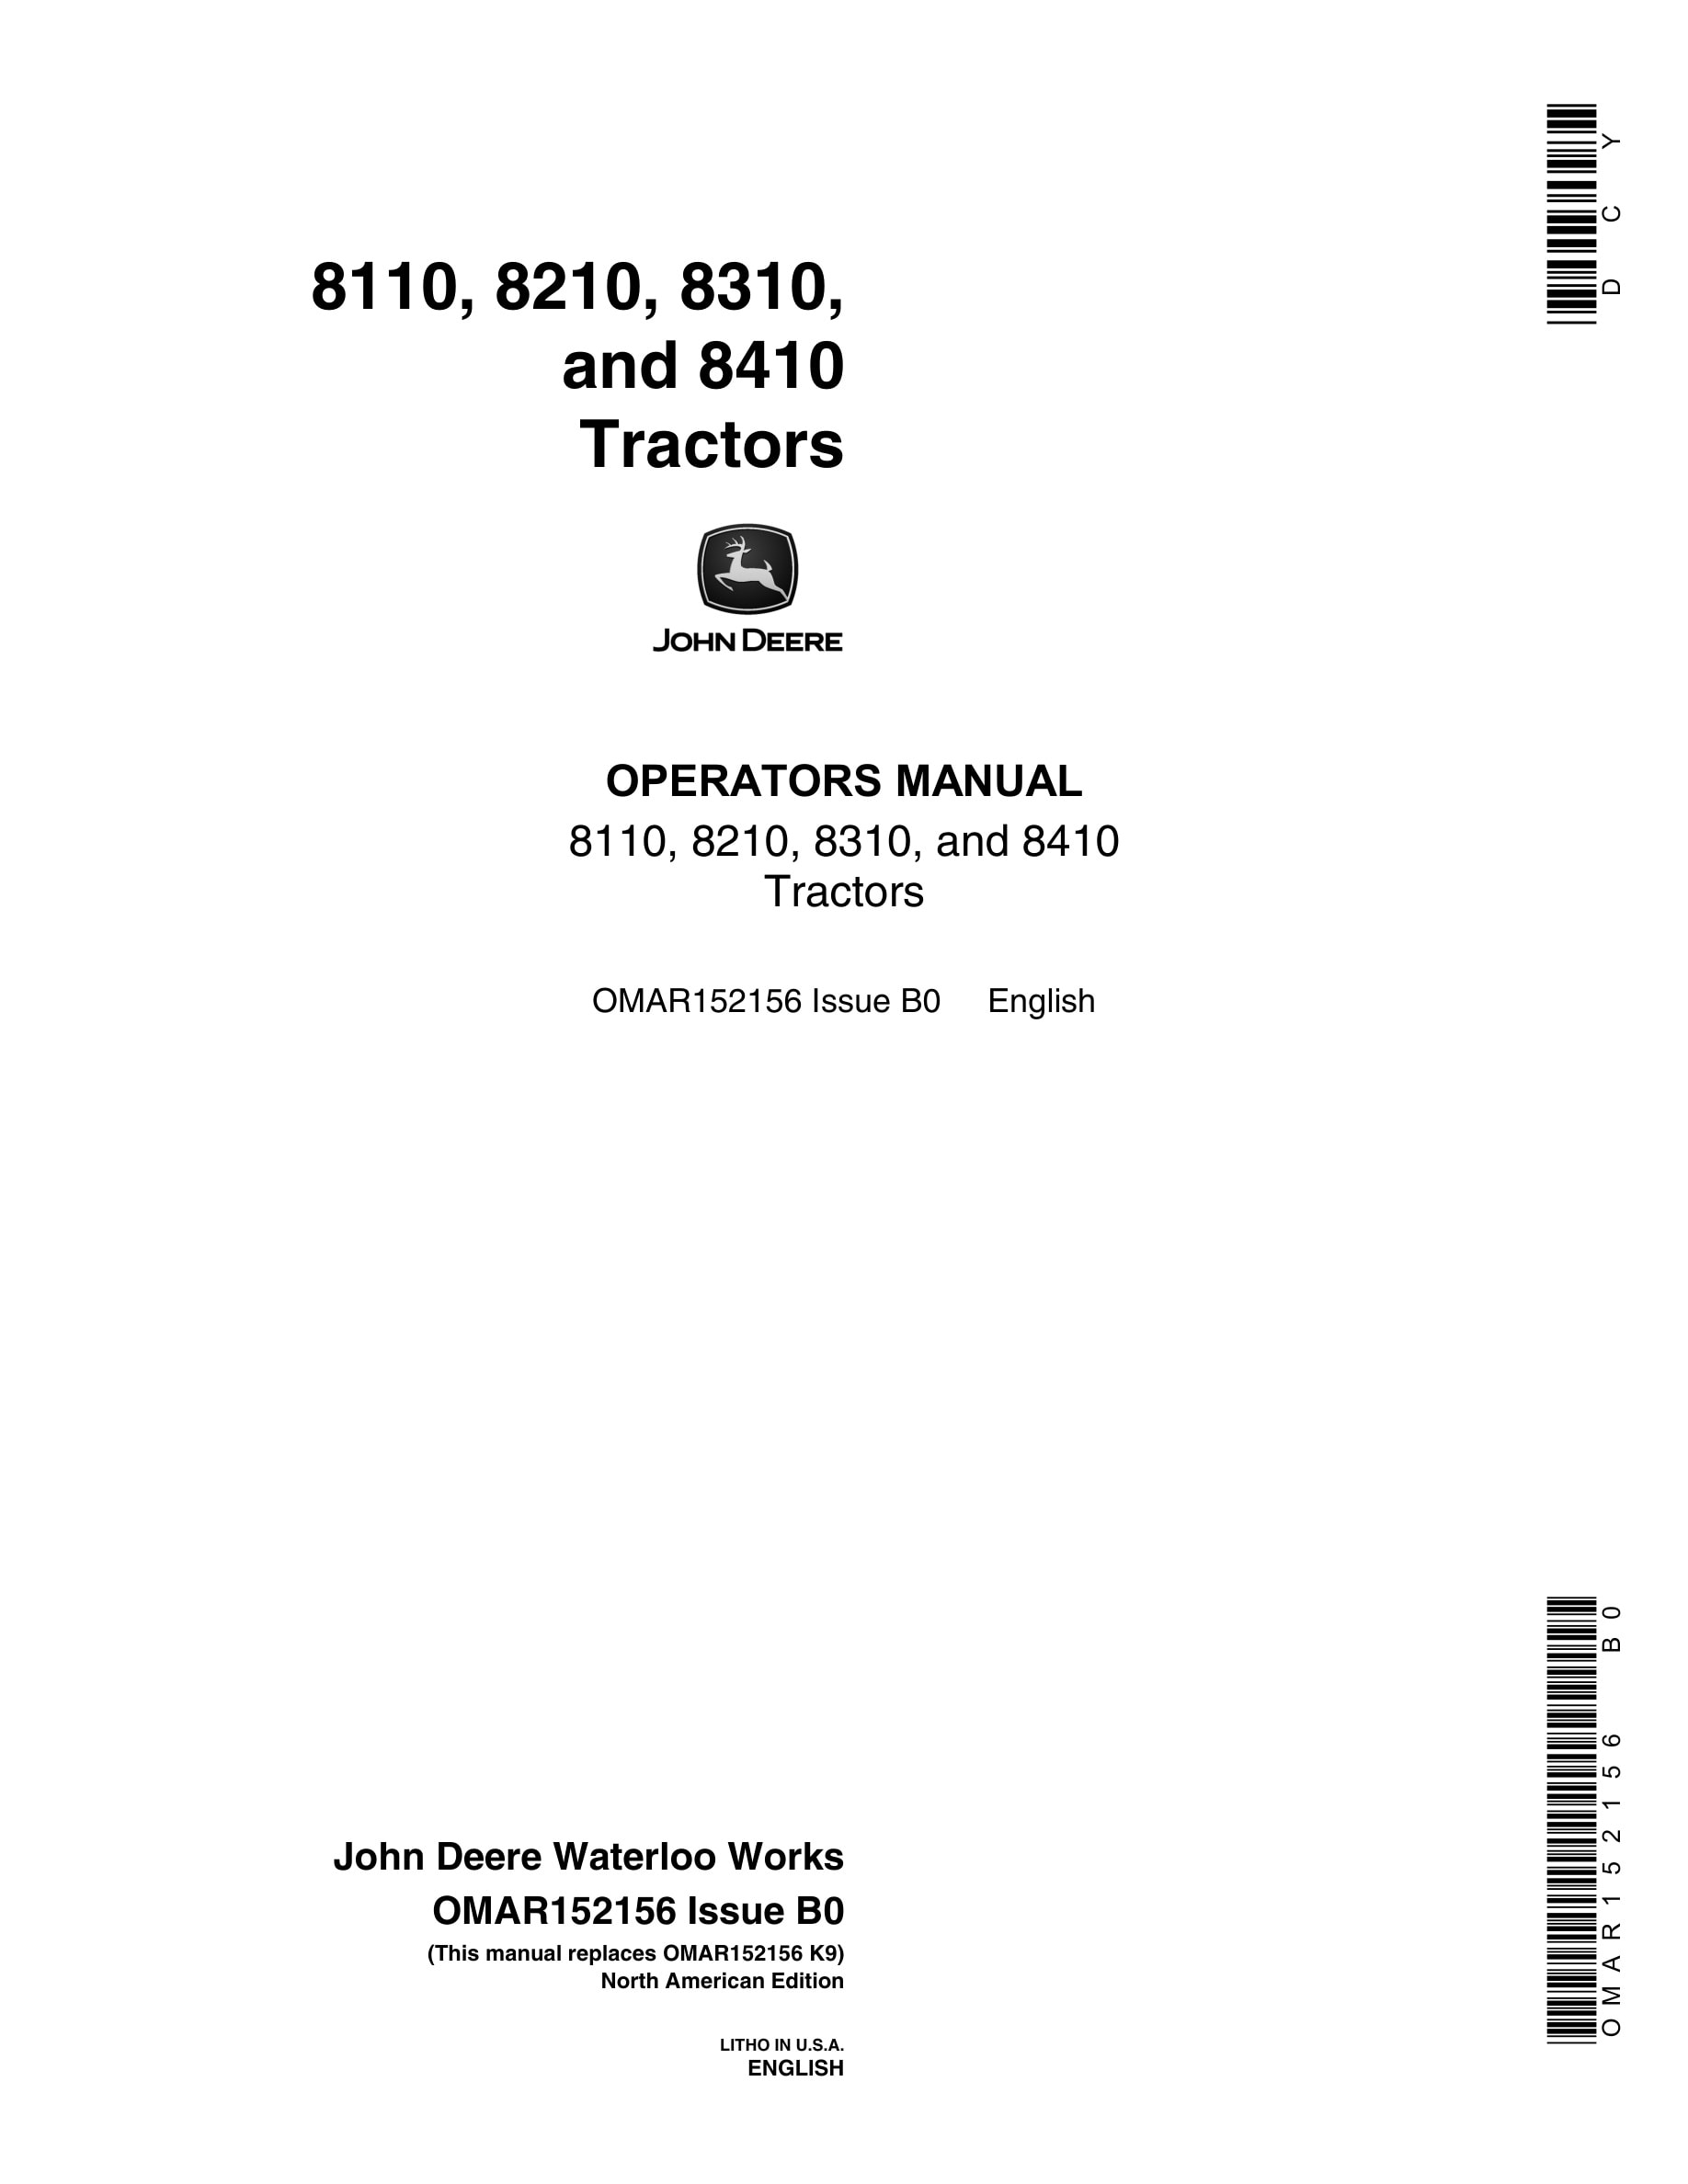 John Deere 8110, 8210, 8310, and 8410 Tractor Operator Manual OMAR152156-1